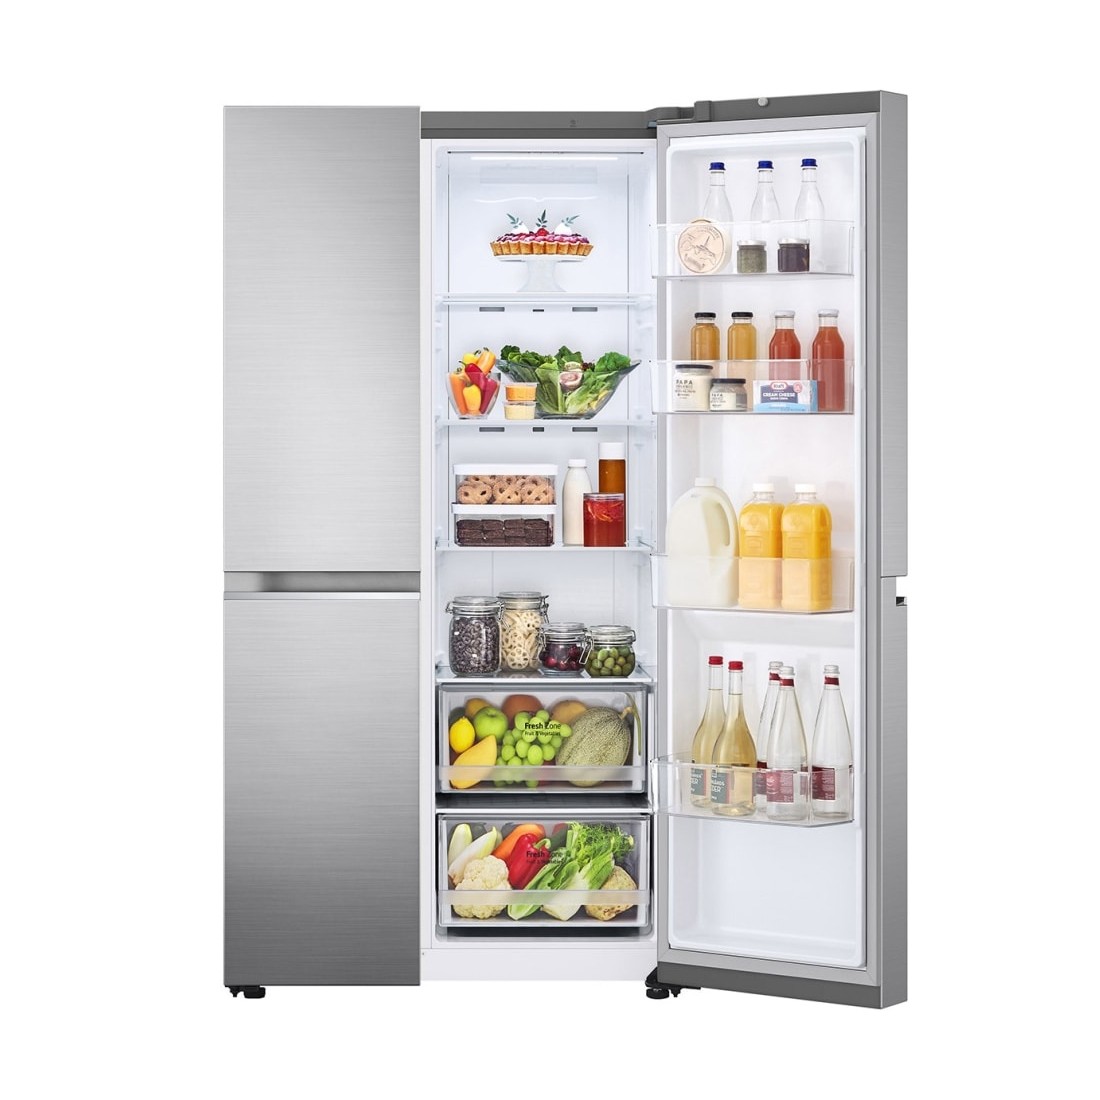 No frost y rebajado: este frigorífico LG está tirado de precio en